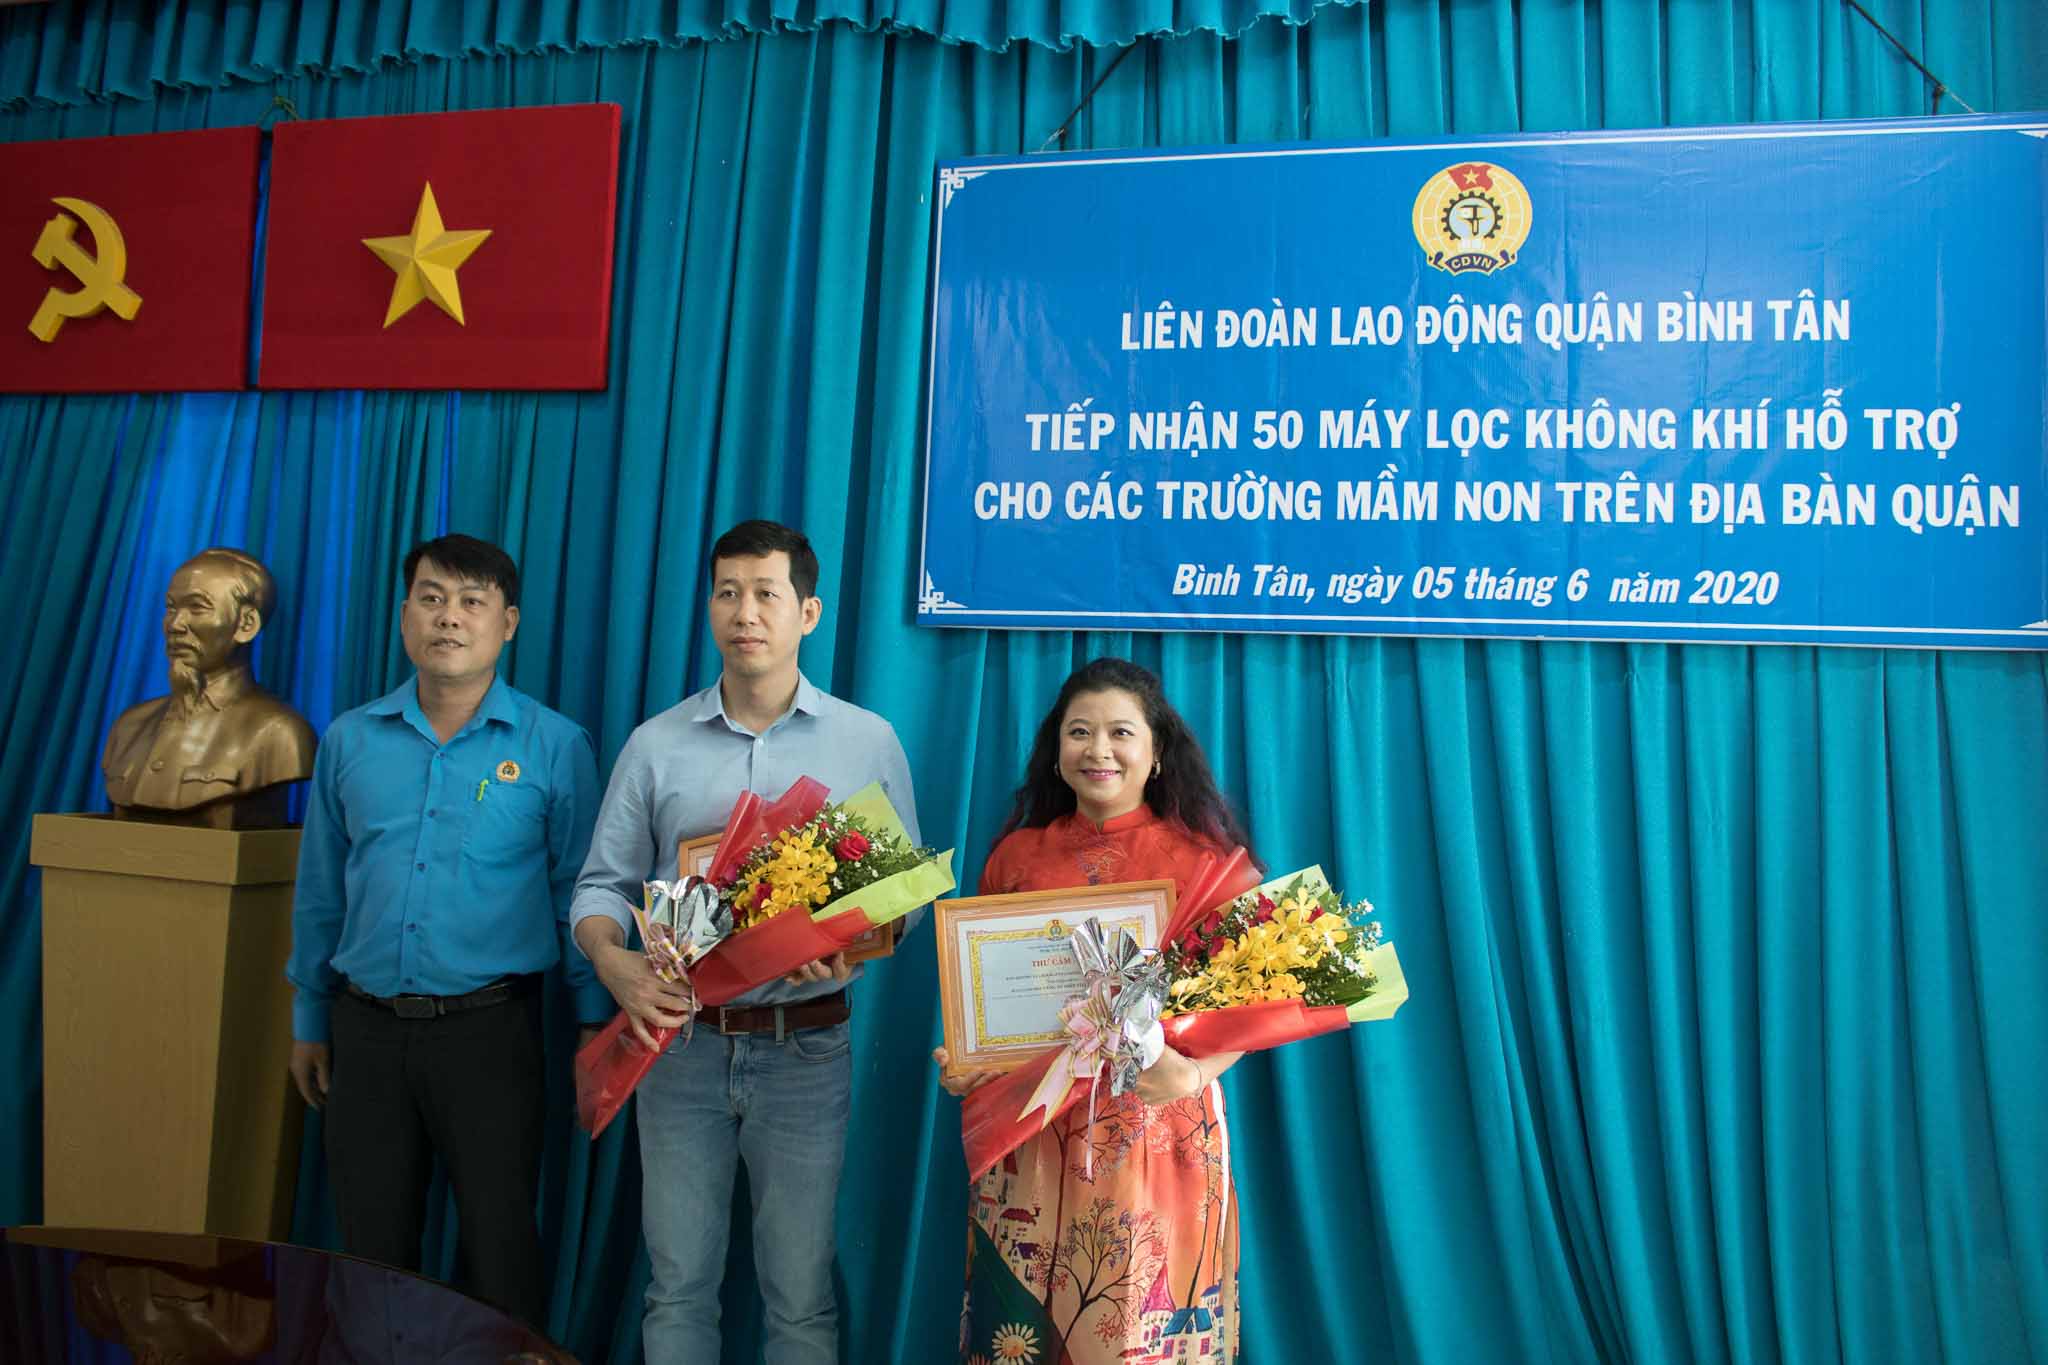 Xiaomi Việt Nam tặng 50 máy lọc không khí cho các trường mầm non trên địa bàn quận Bình Tân